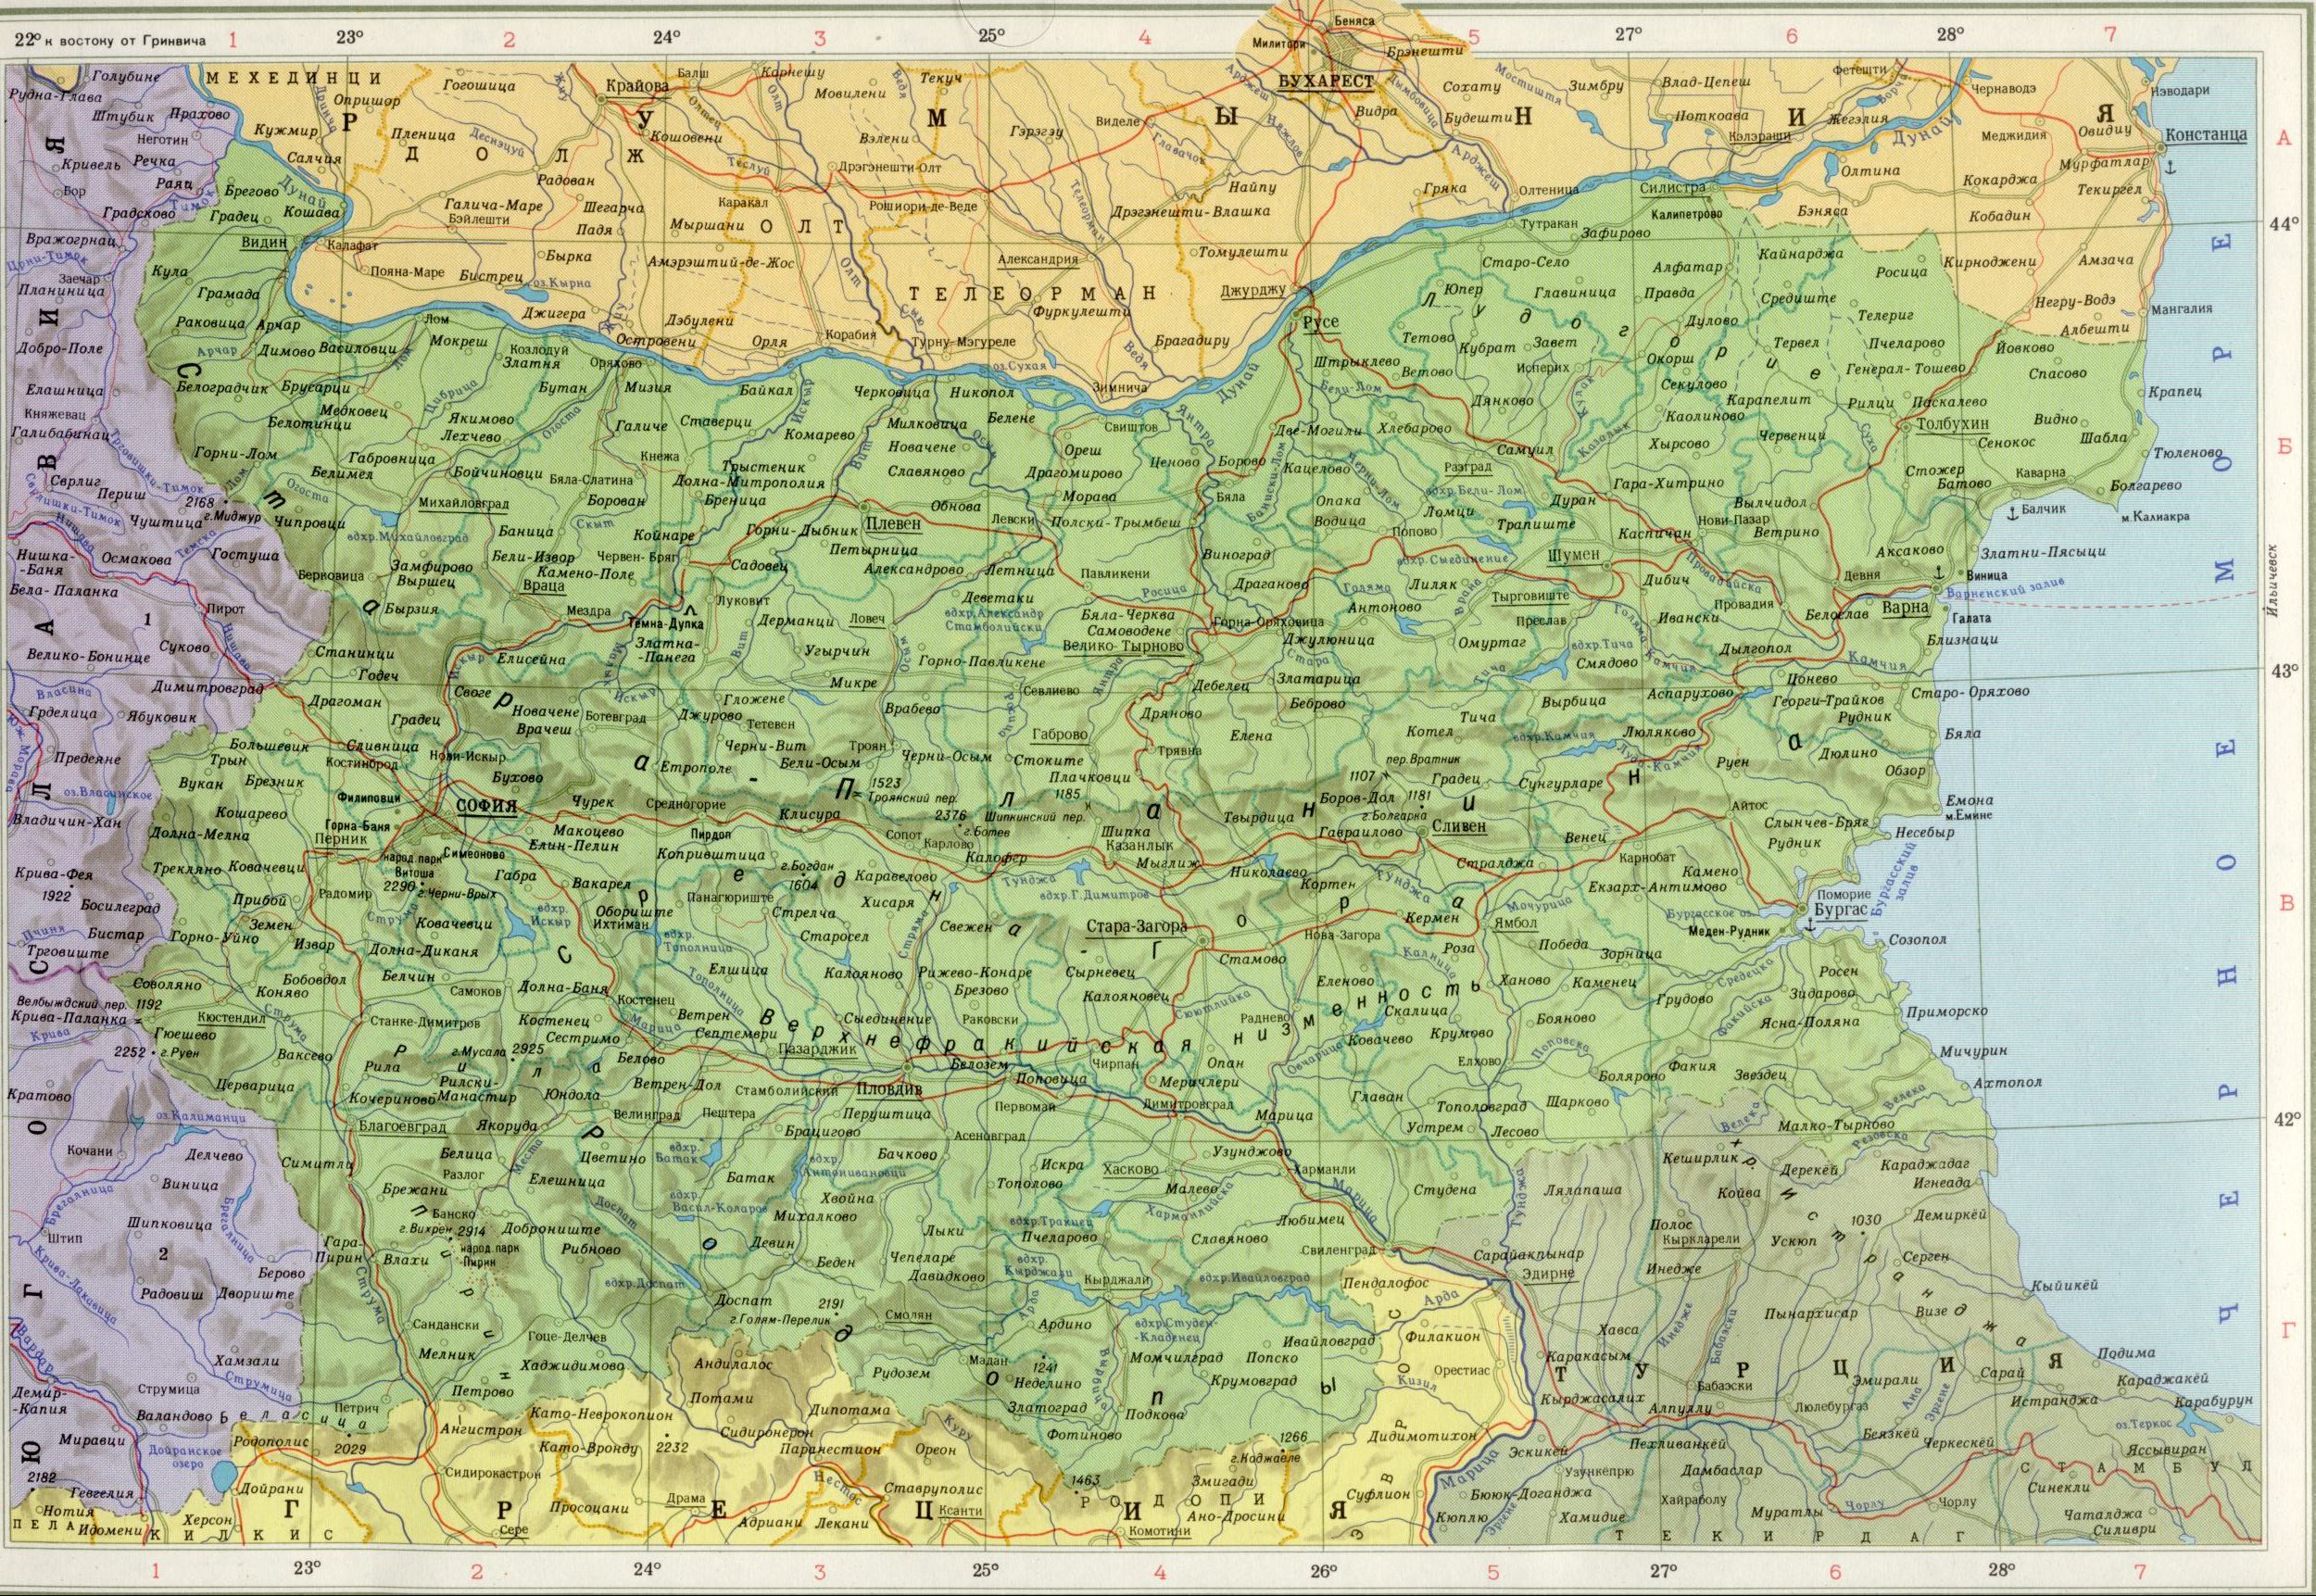 Bulgarie Carte 1cm = 20km. Télécharger la carte politique de l'Europe gratuitement